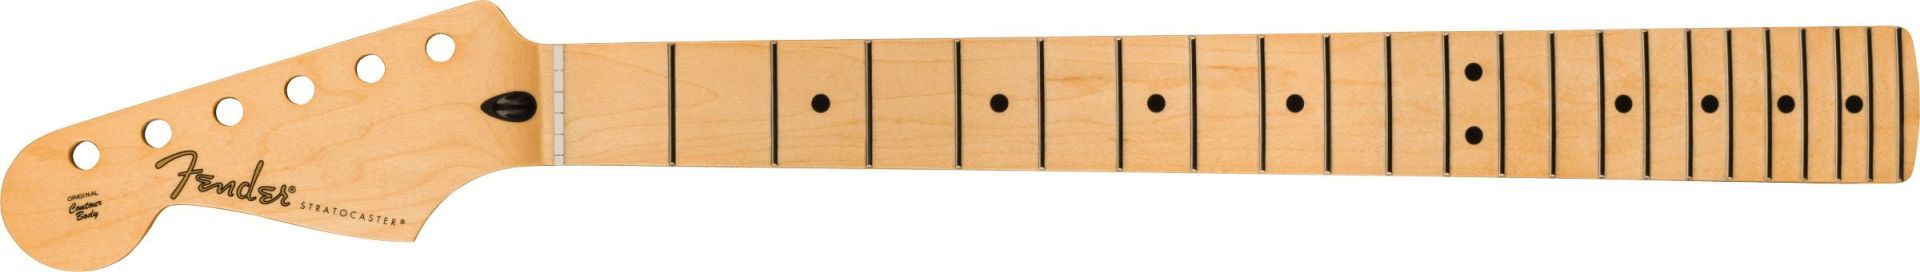 Fender Player Series Stratocaster LH Neck 22 Medium Jumbo Frets Maple 9.5 Modern C